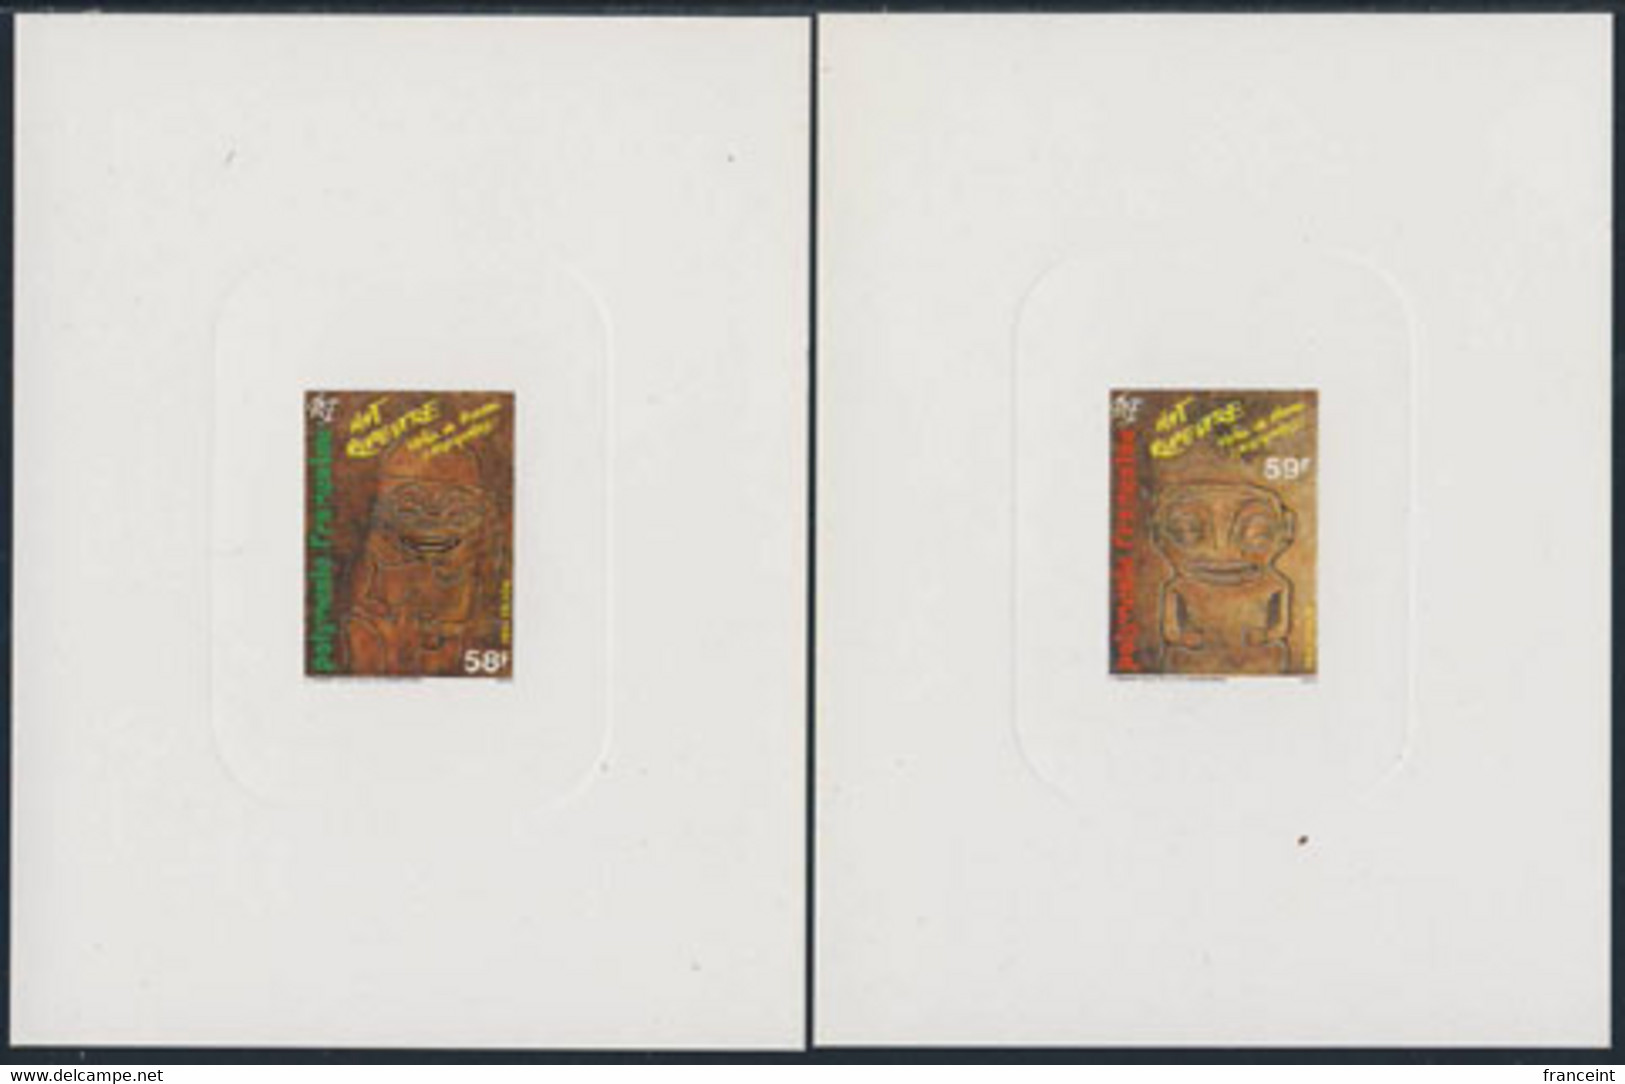 FRENCH POLYNESIA (1986) Tiki Rock Carvings. Set Of 2 Deluxe Sheets. Scott Nos 436-7, Yvert Nos 259-60. - Non Dentelés, épreuves & Variétés